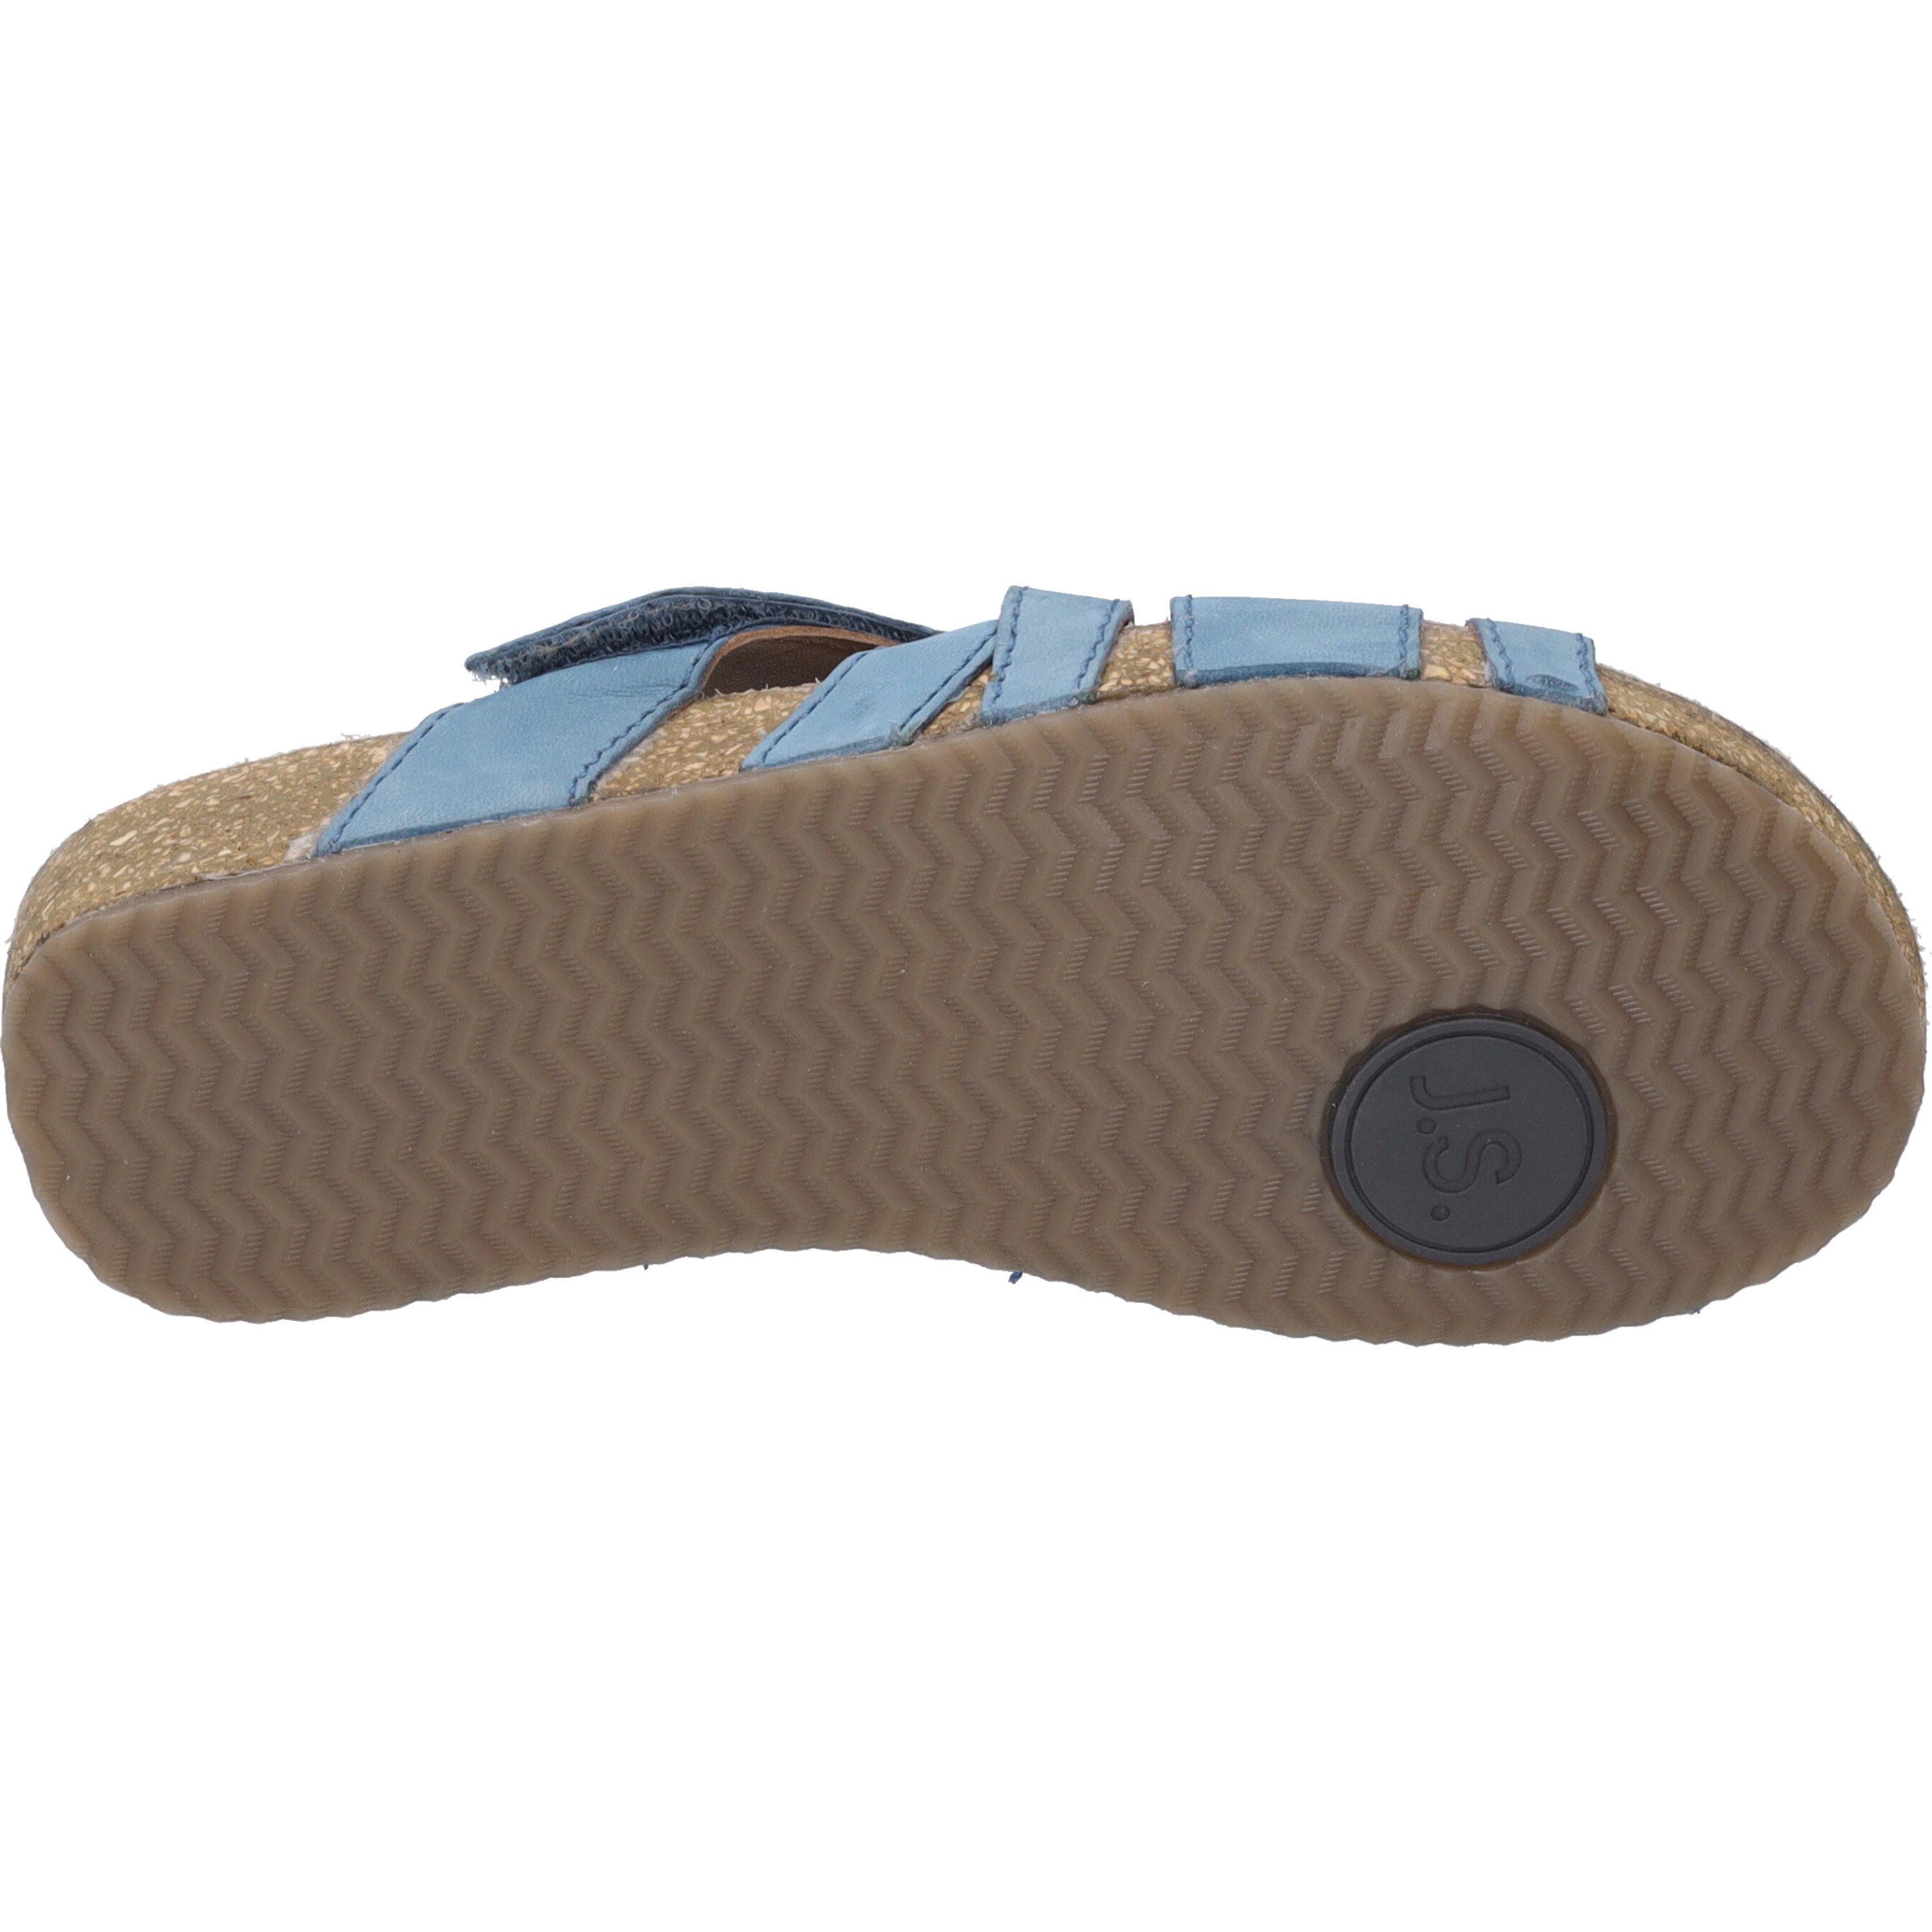 Sandale 74, Josef Seibel blau Tonga